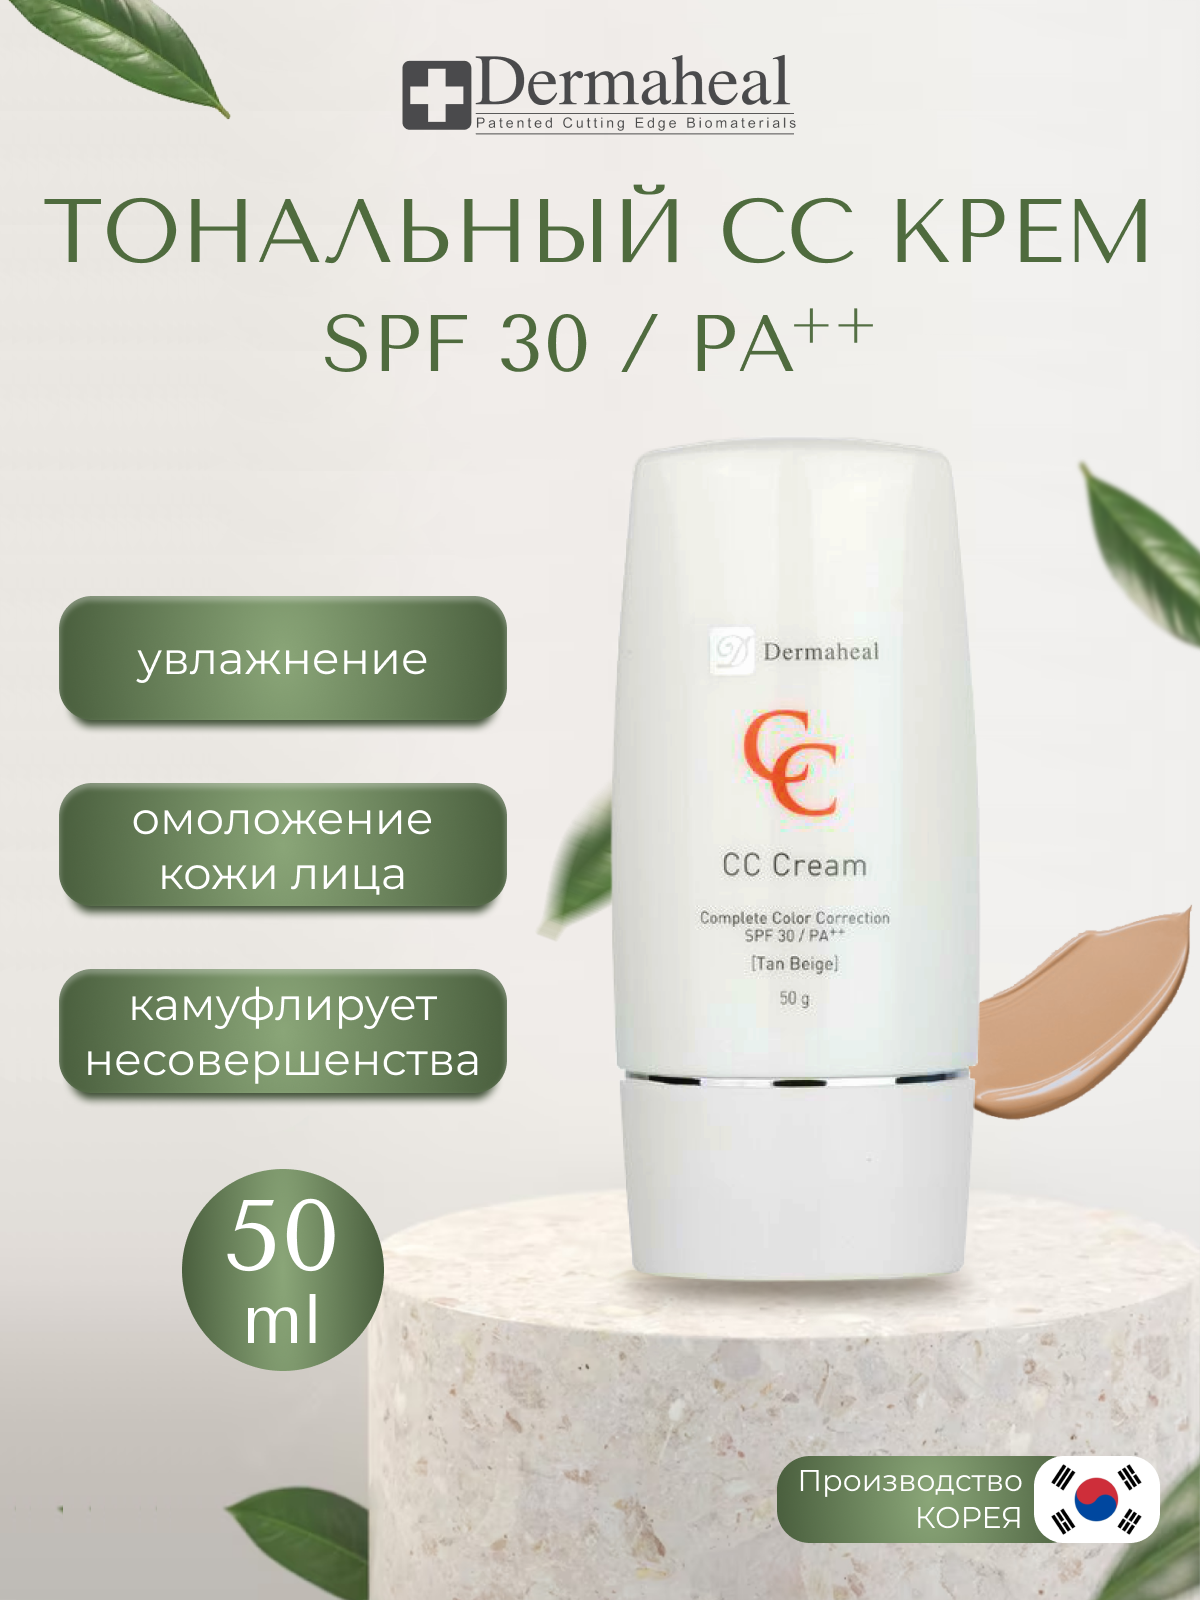 "Dermaheal СС Cream ( Natural Beige )- крем-корректор для кожи солнцезащитный